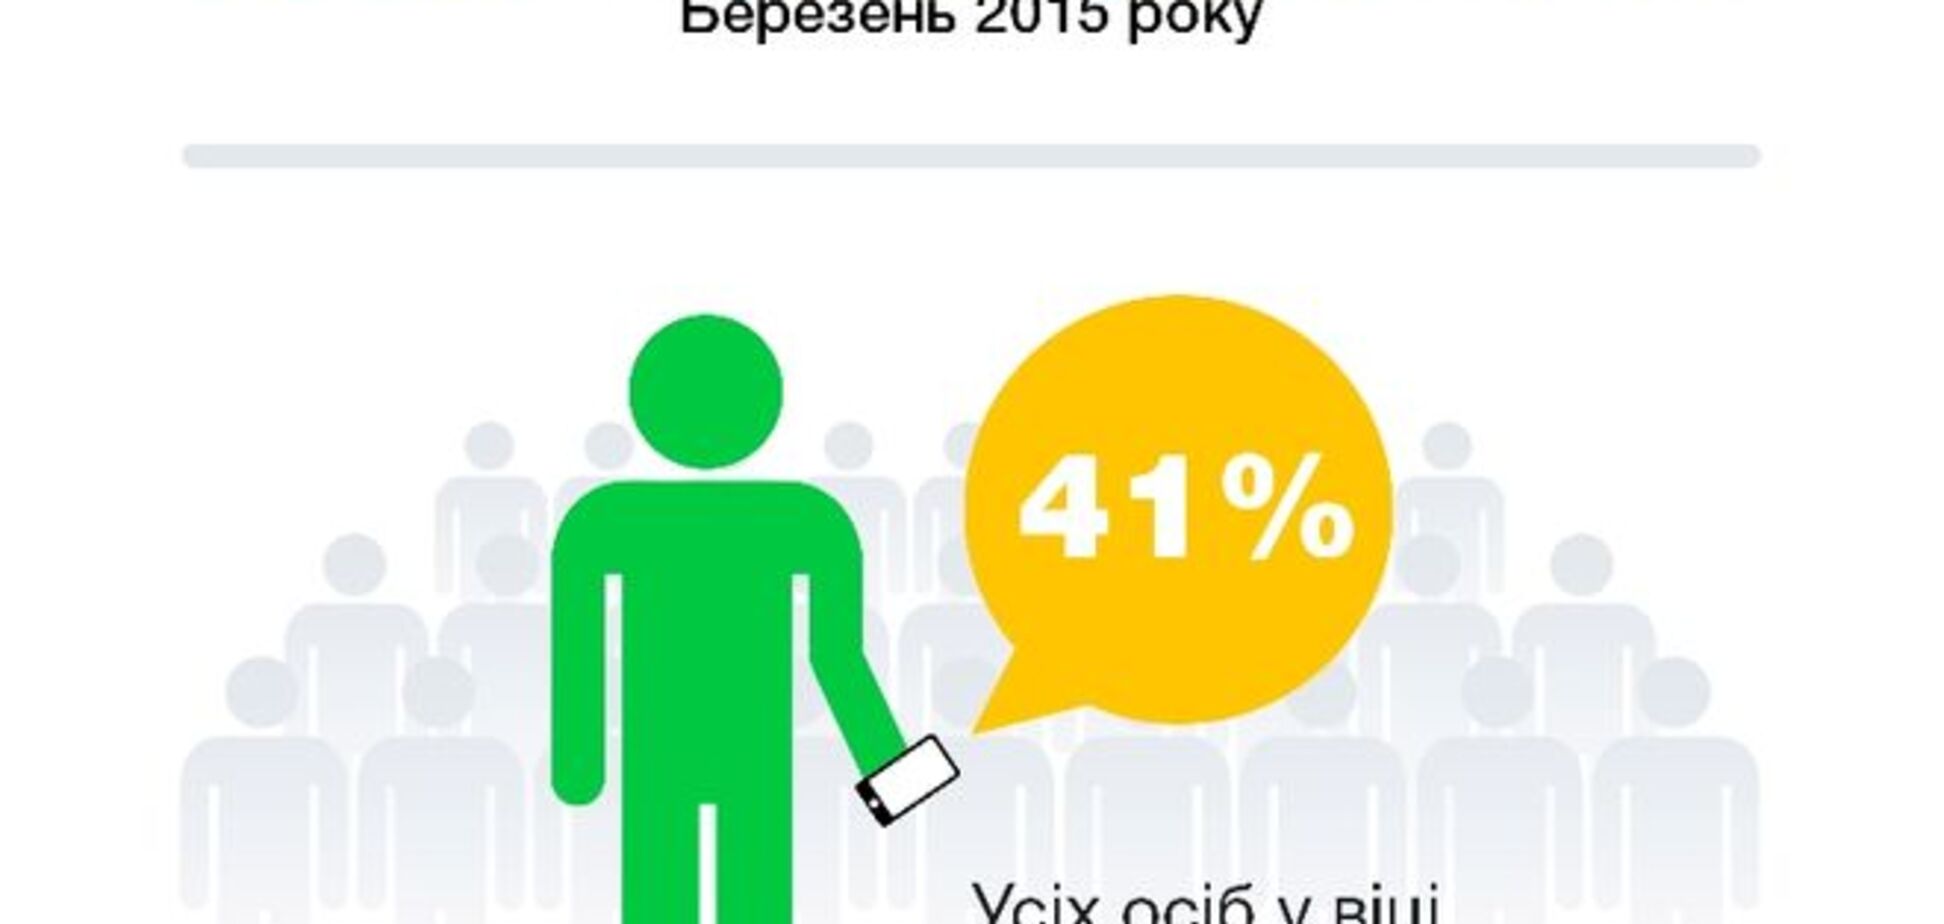 Распространение смартфонов в Украине по аудитории 18-50 лет в 2015 году достигнет 50%